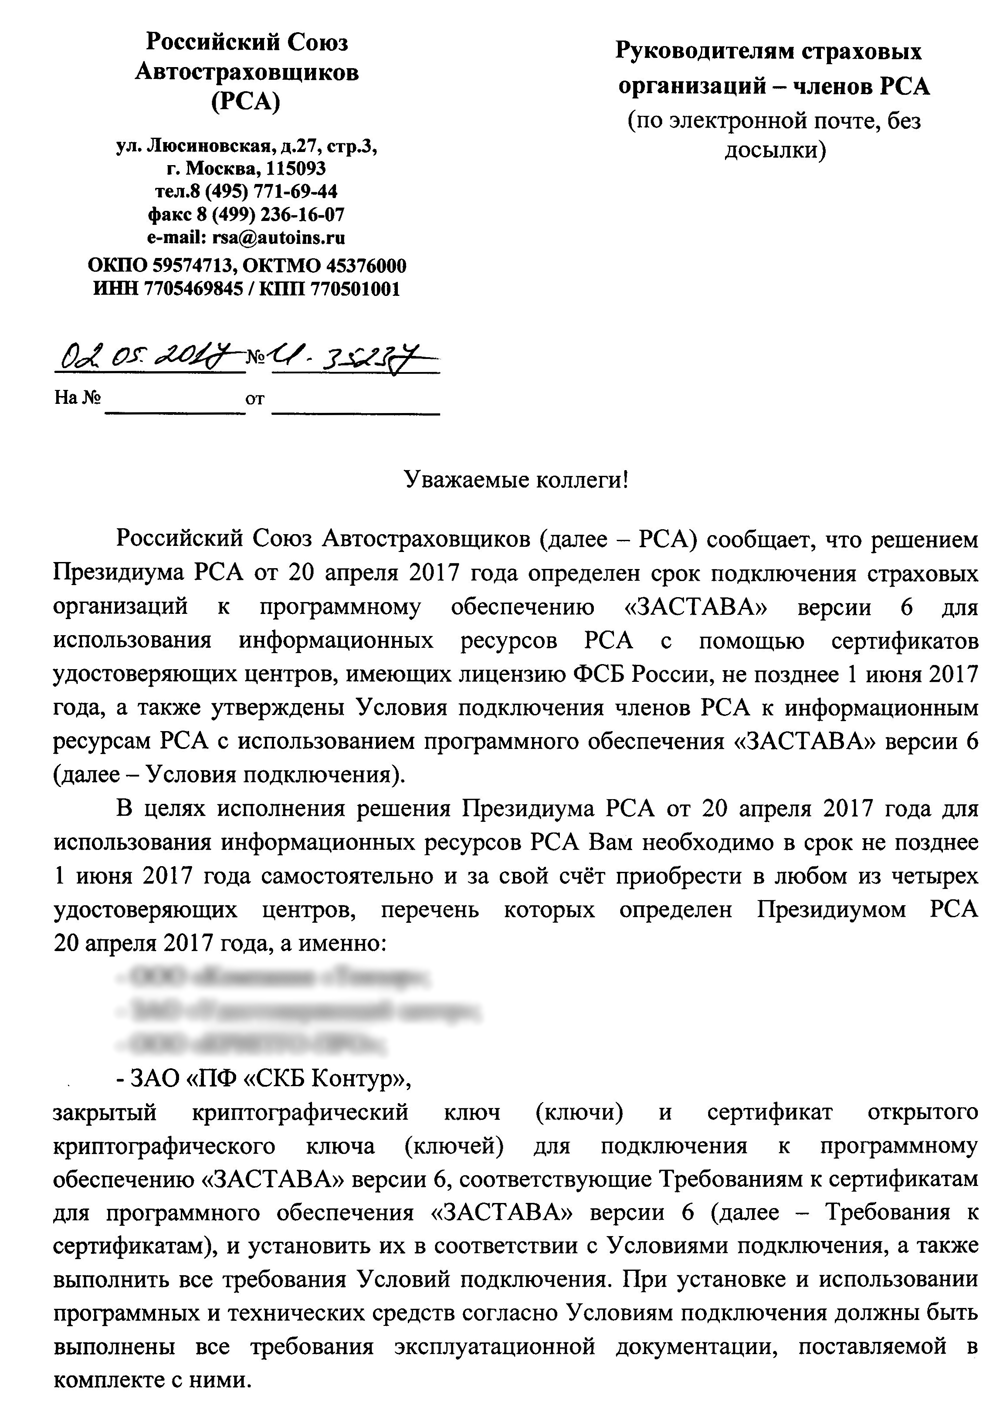 Уведомление Российского Союза Автостраховщиков о необходимости приобретения электронной подписи